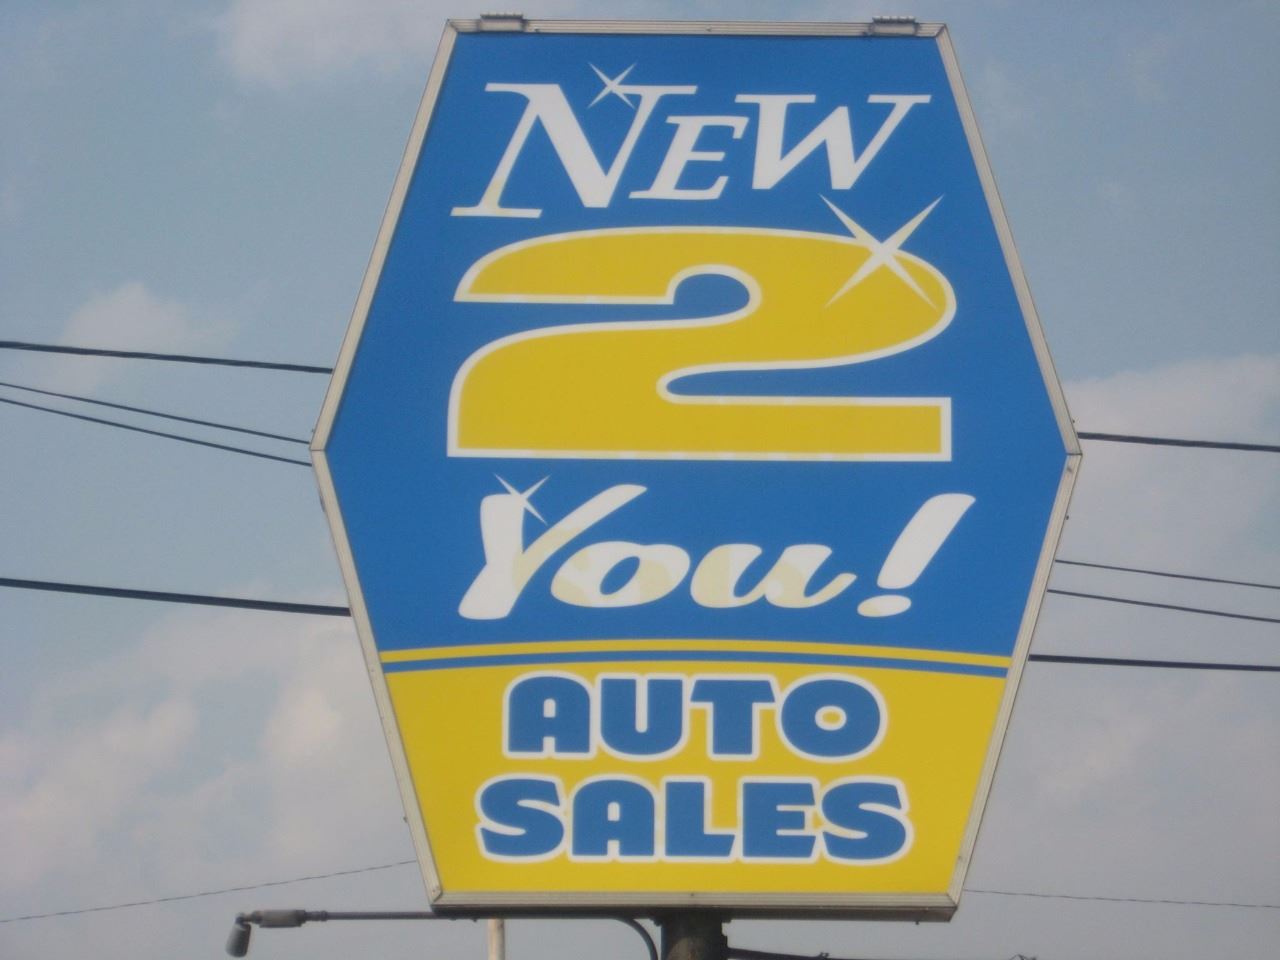 NEW 2 YOU AUTO SALES LLC